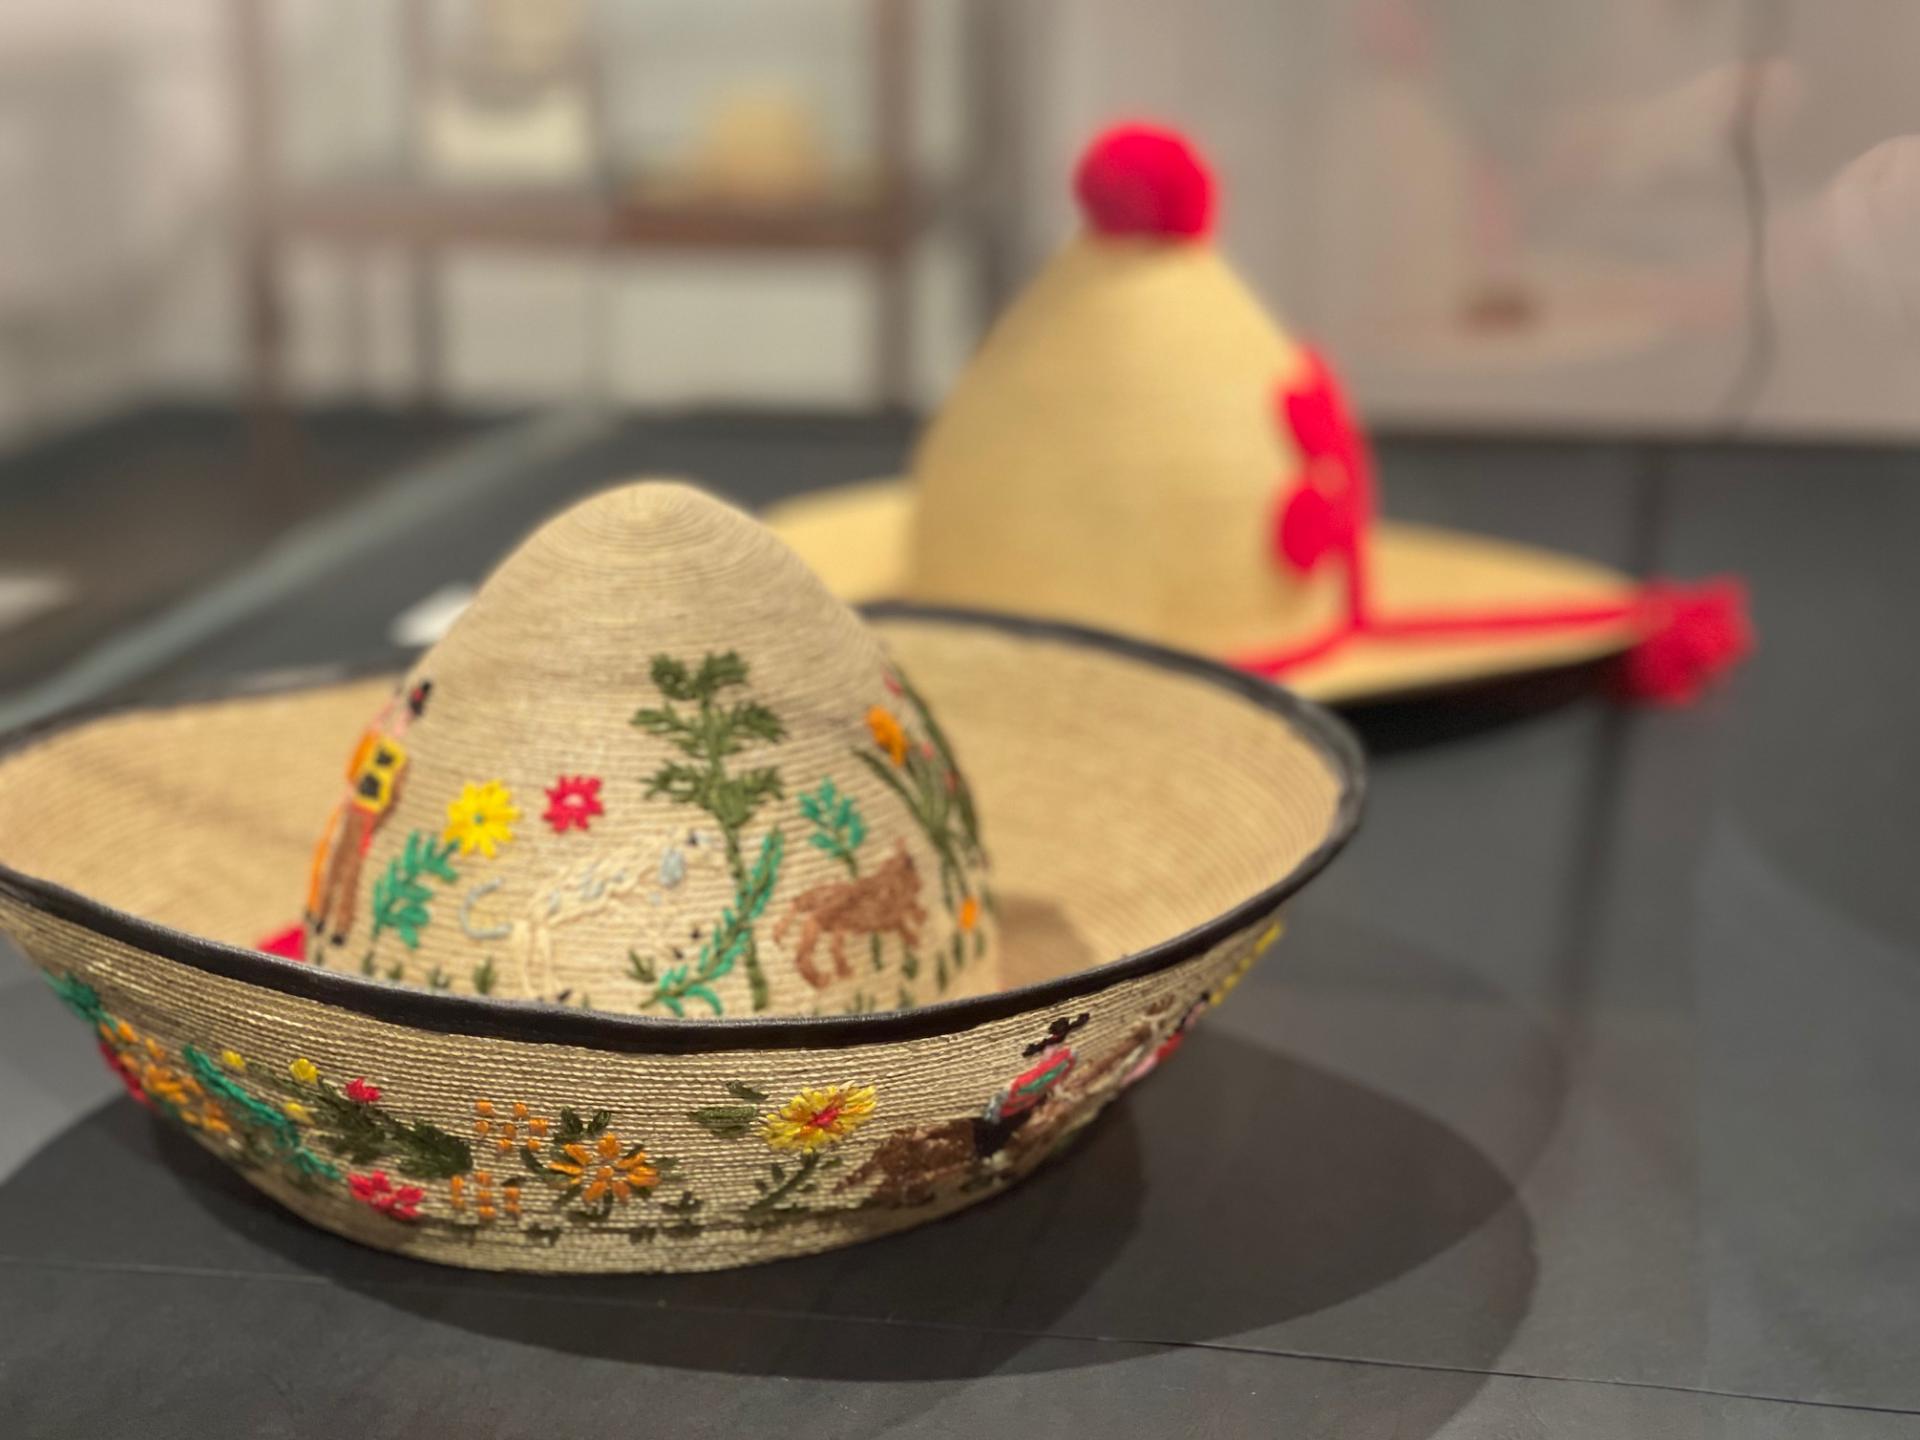 Fotografía que muestra un sombrero de paja de teatina tejida, su forma imita al bonete huicano, tanto en la parte externa del ala como en la copa posee coloridos bordados de lana con motivos costumbristas.